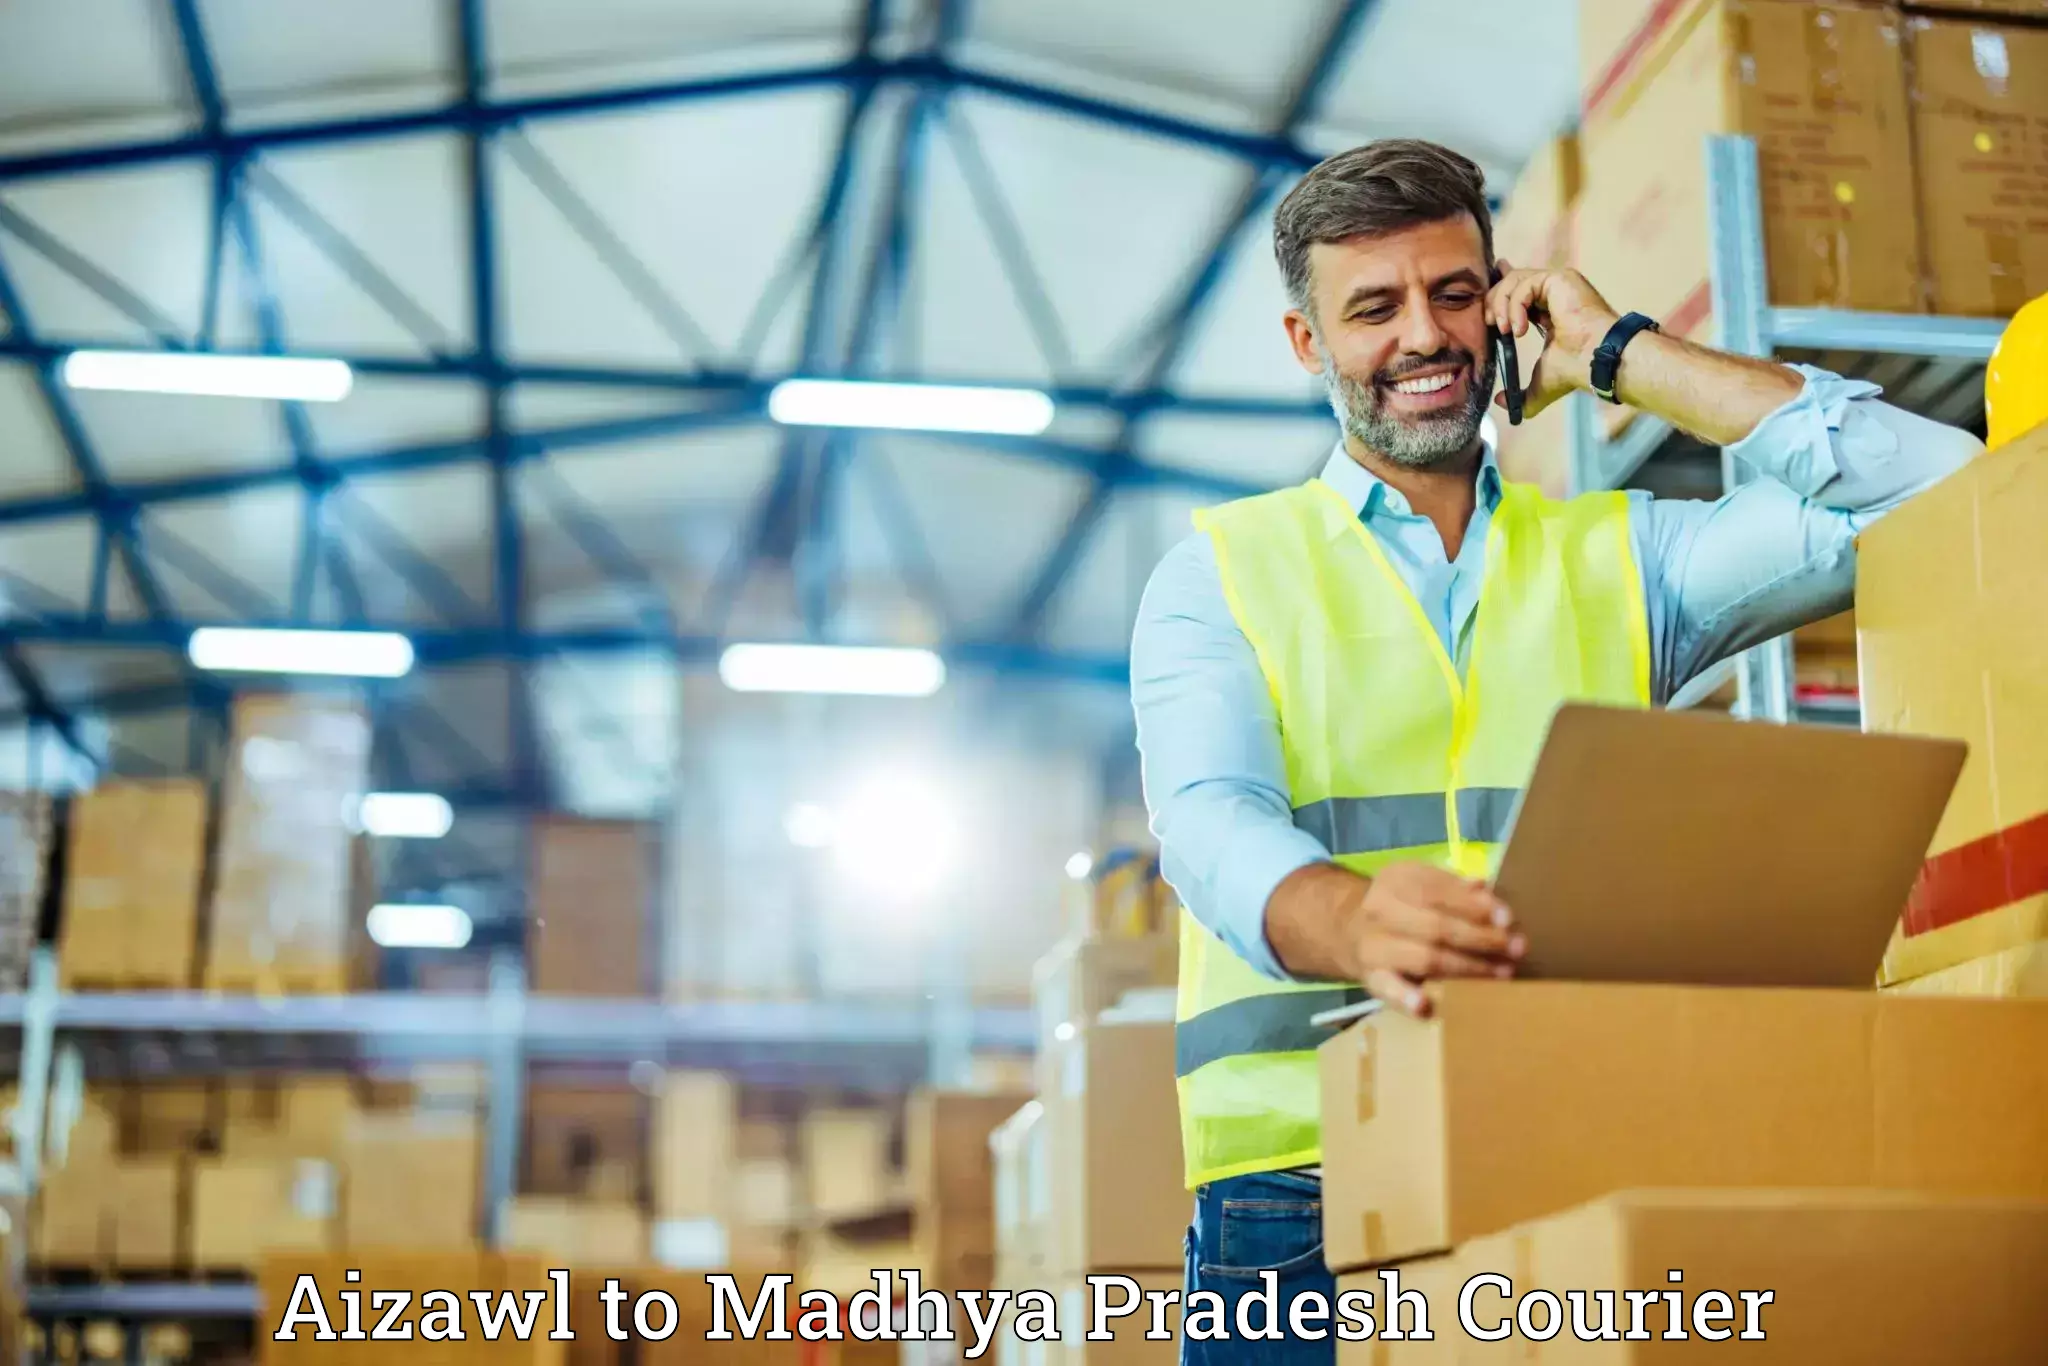 Quality moving company Aizawl to Khandwa